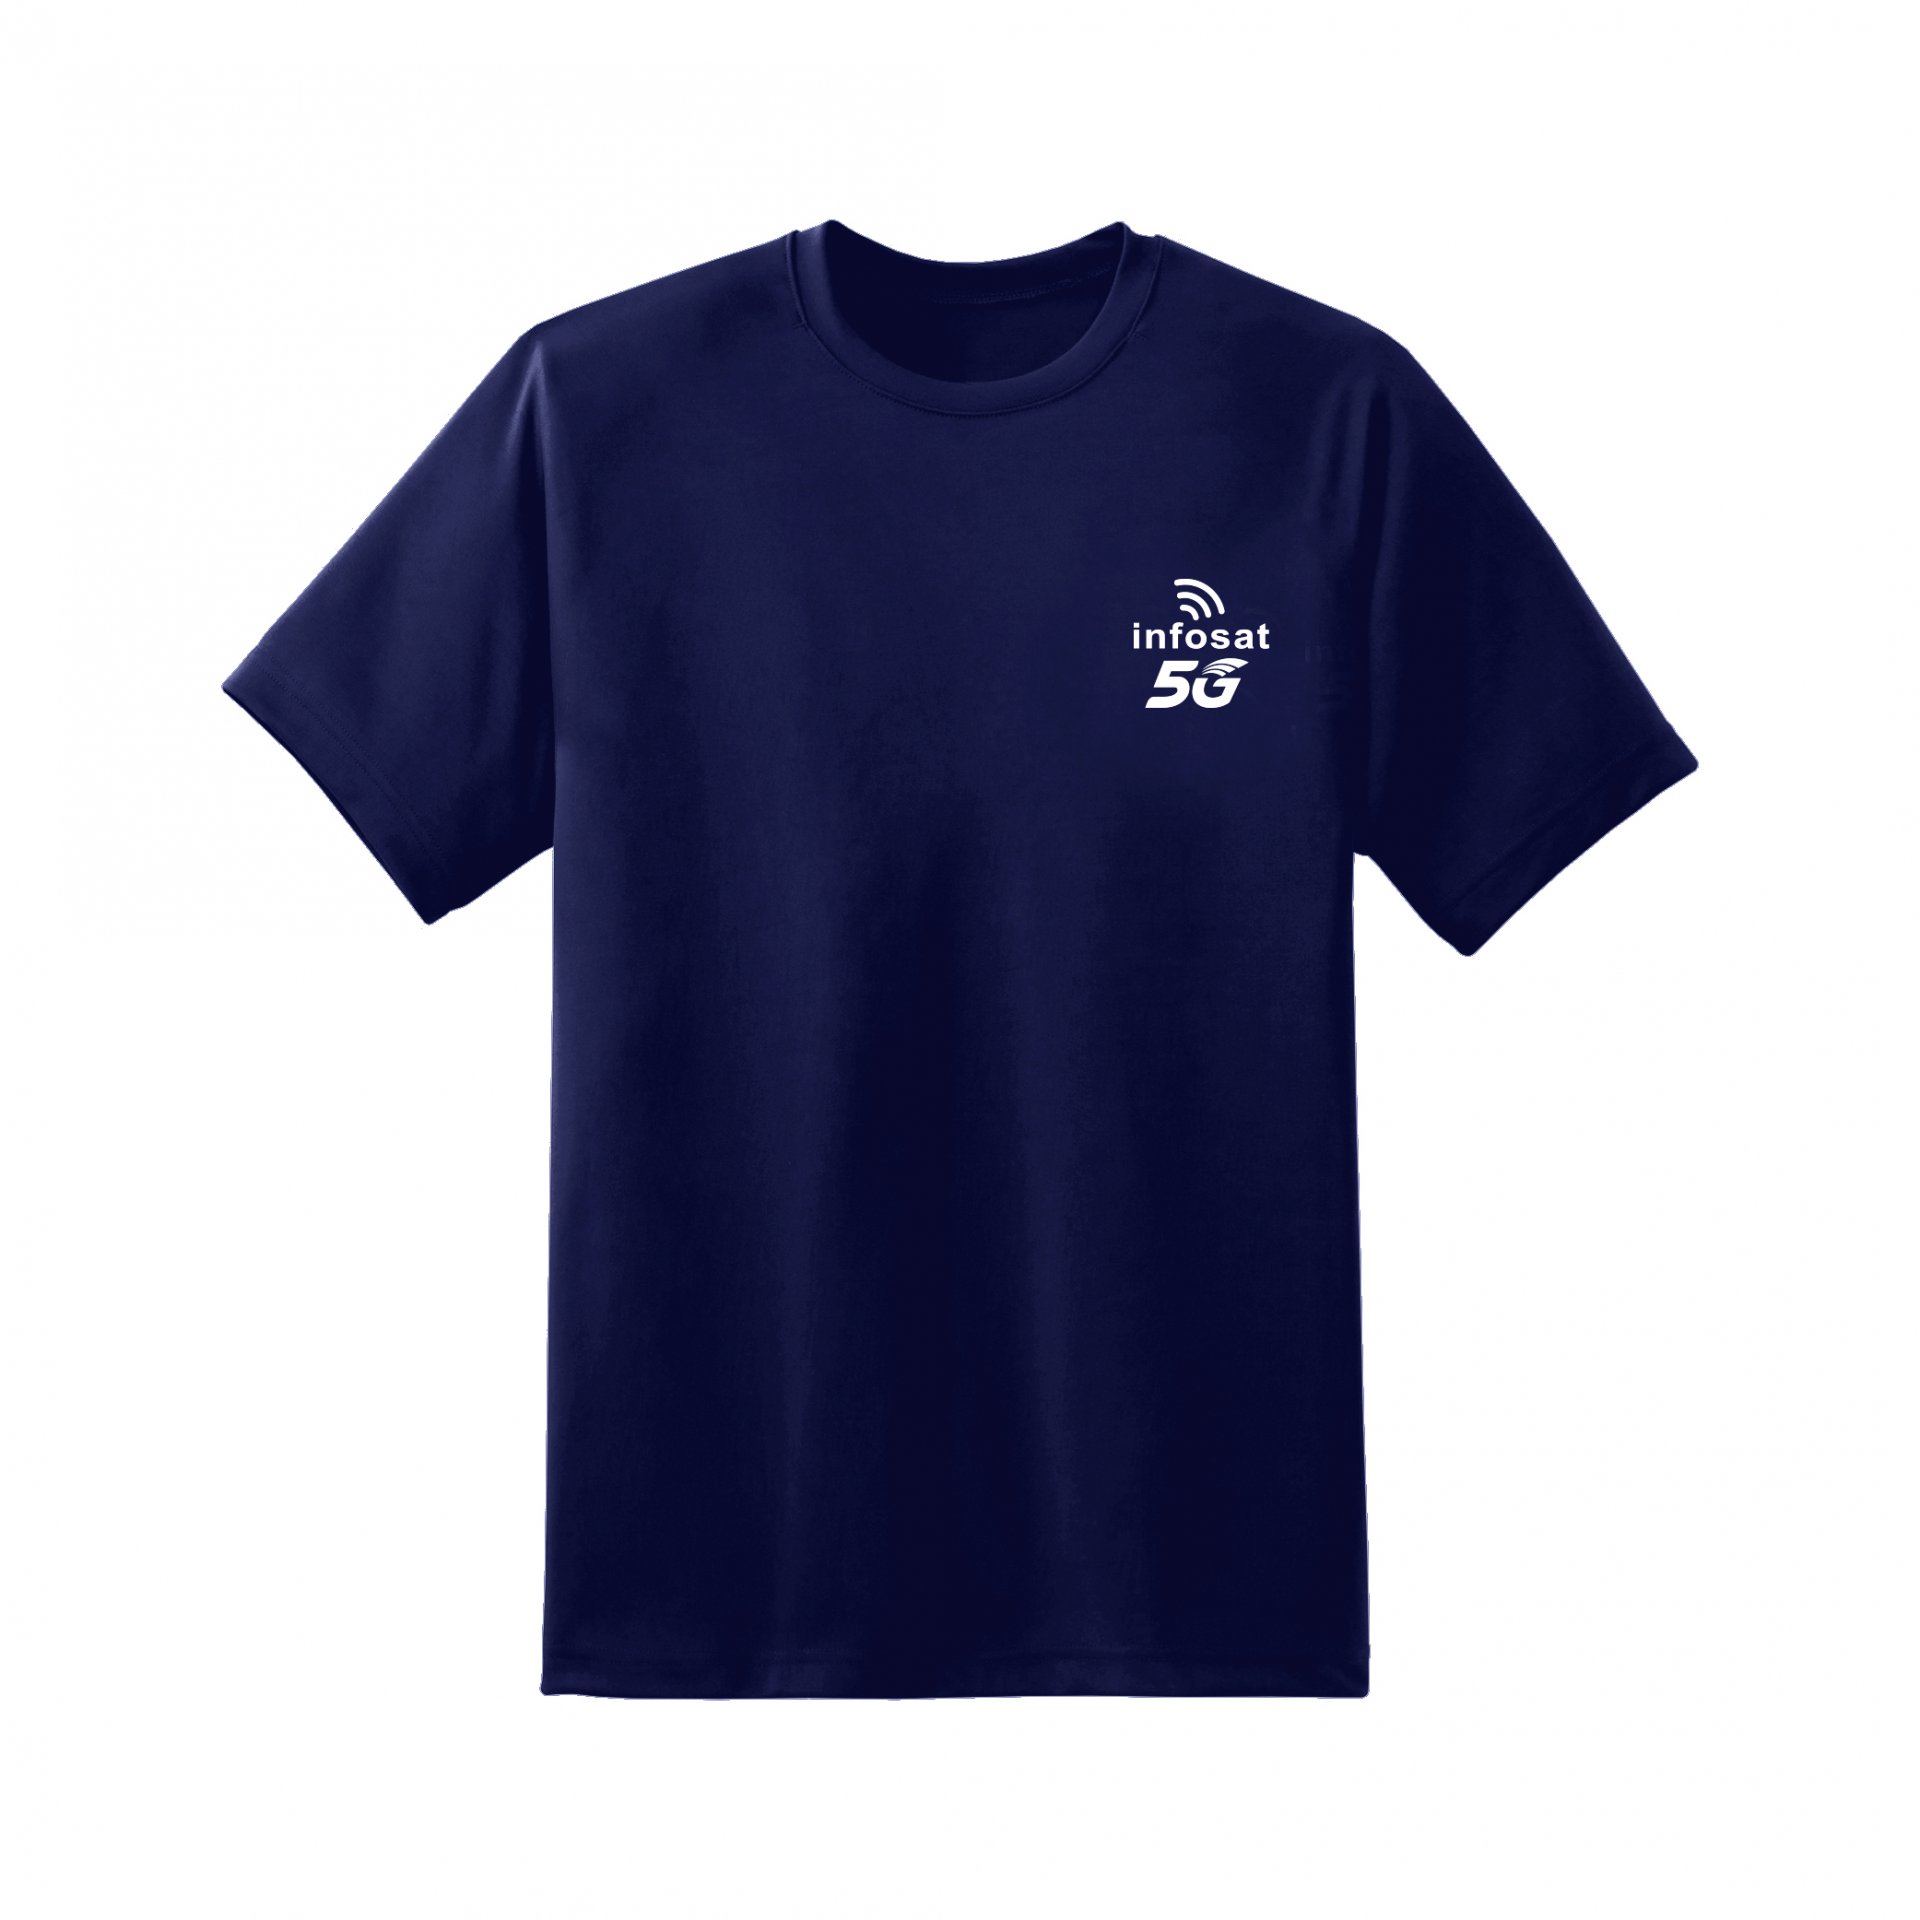 INFOSAT 5G T-Shirt - Navy